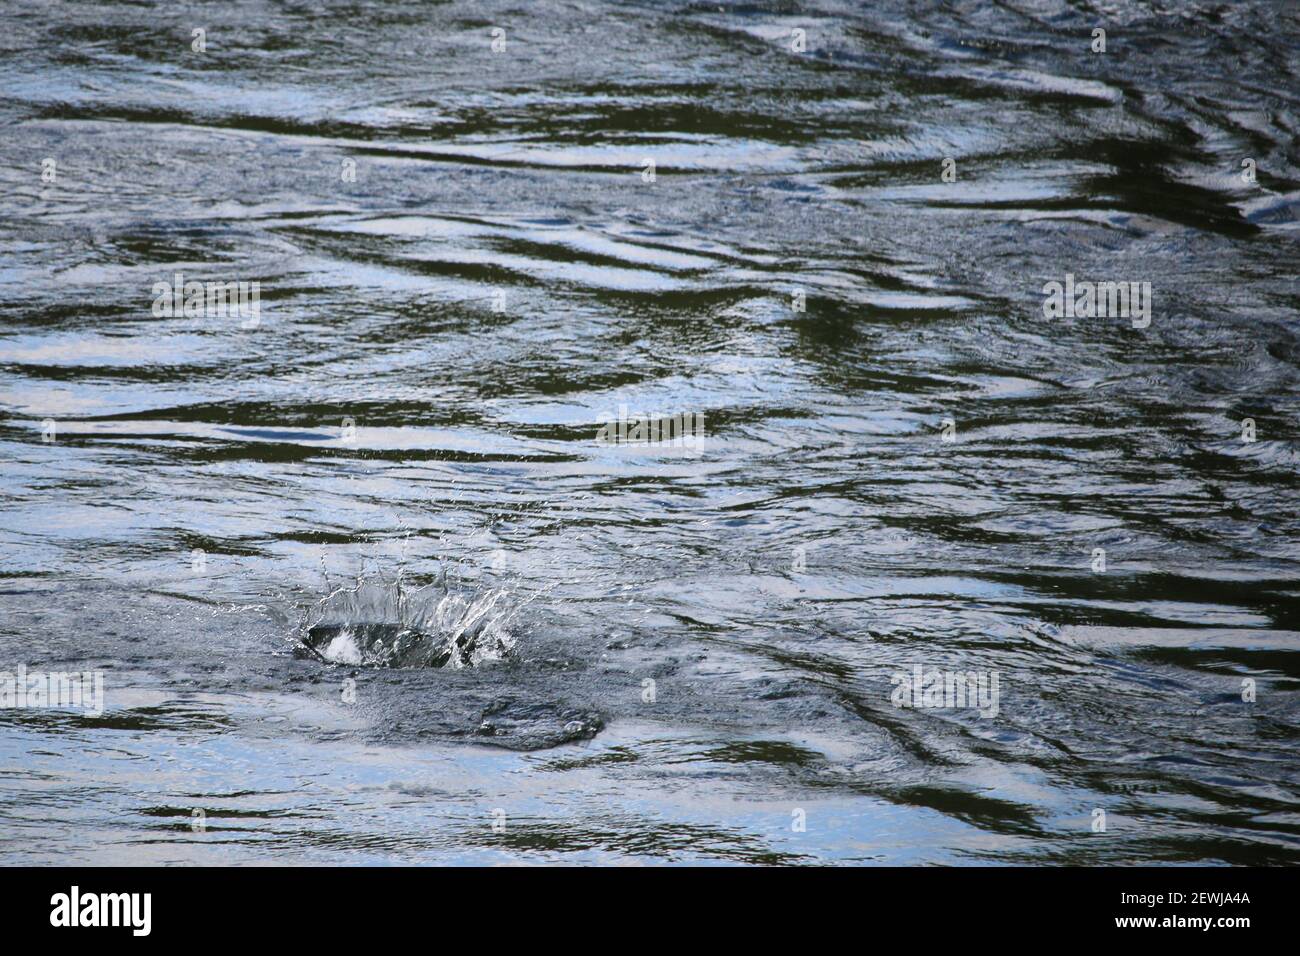 El agua salpica después de que un salmón salte y se zambulle un río Foto de stock